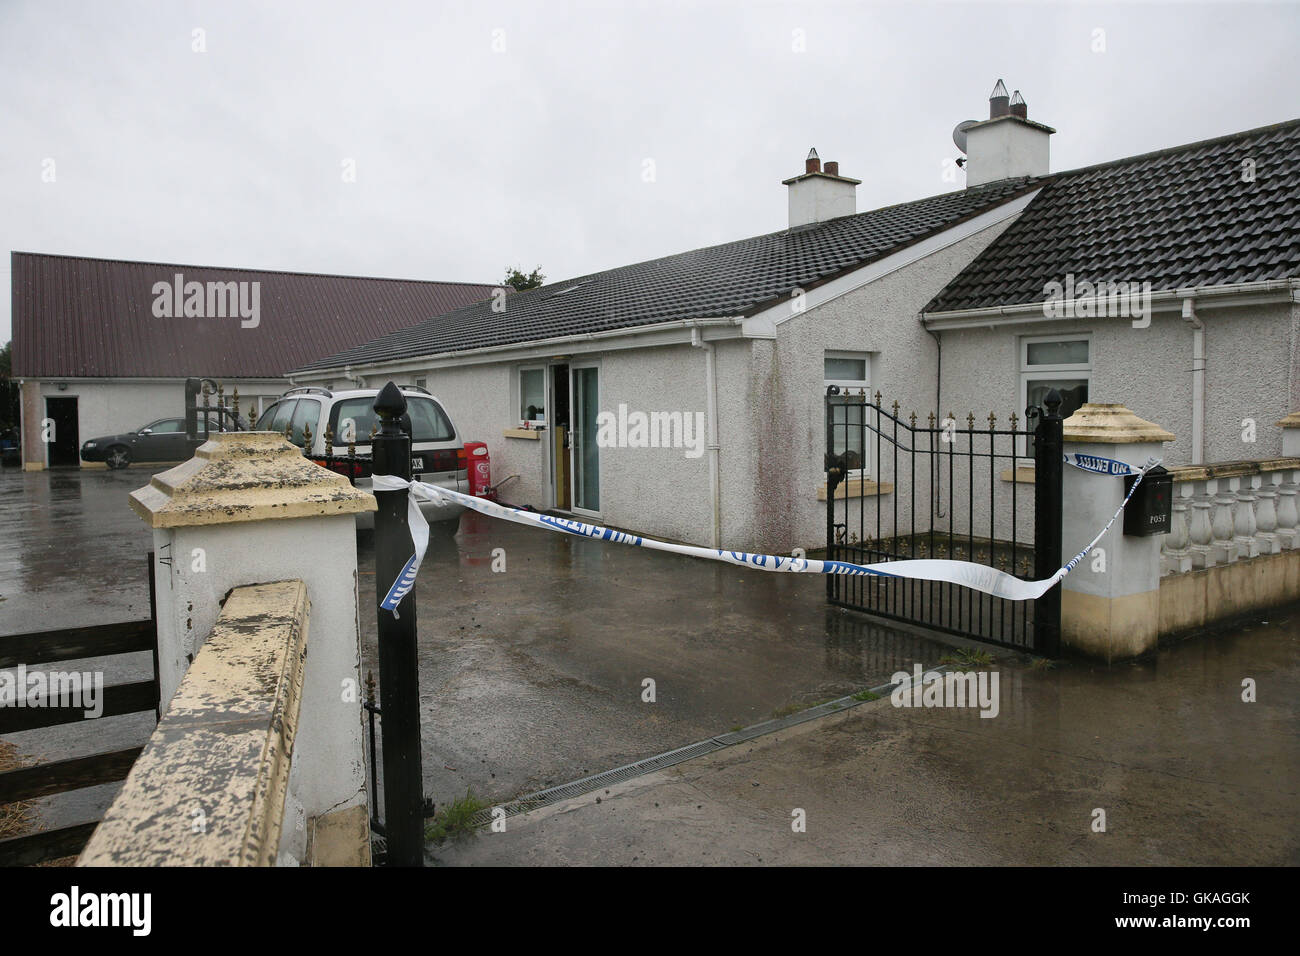 Cinta de Garda fuera una casa en Castletown, Kilpatrick, cerca de Navan, Co Meath, que ha sido clausurado como seis personas han sido detenidas después de que un hombre alegó que estaba siendo encarcelados injustamente en la propiedad. Foto de stock